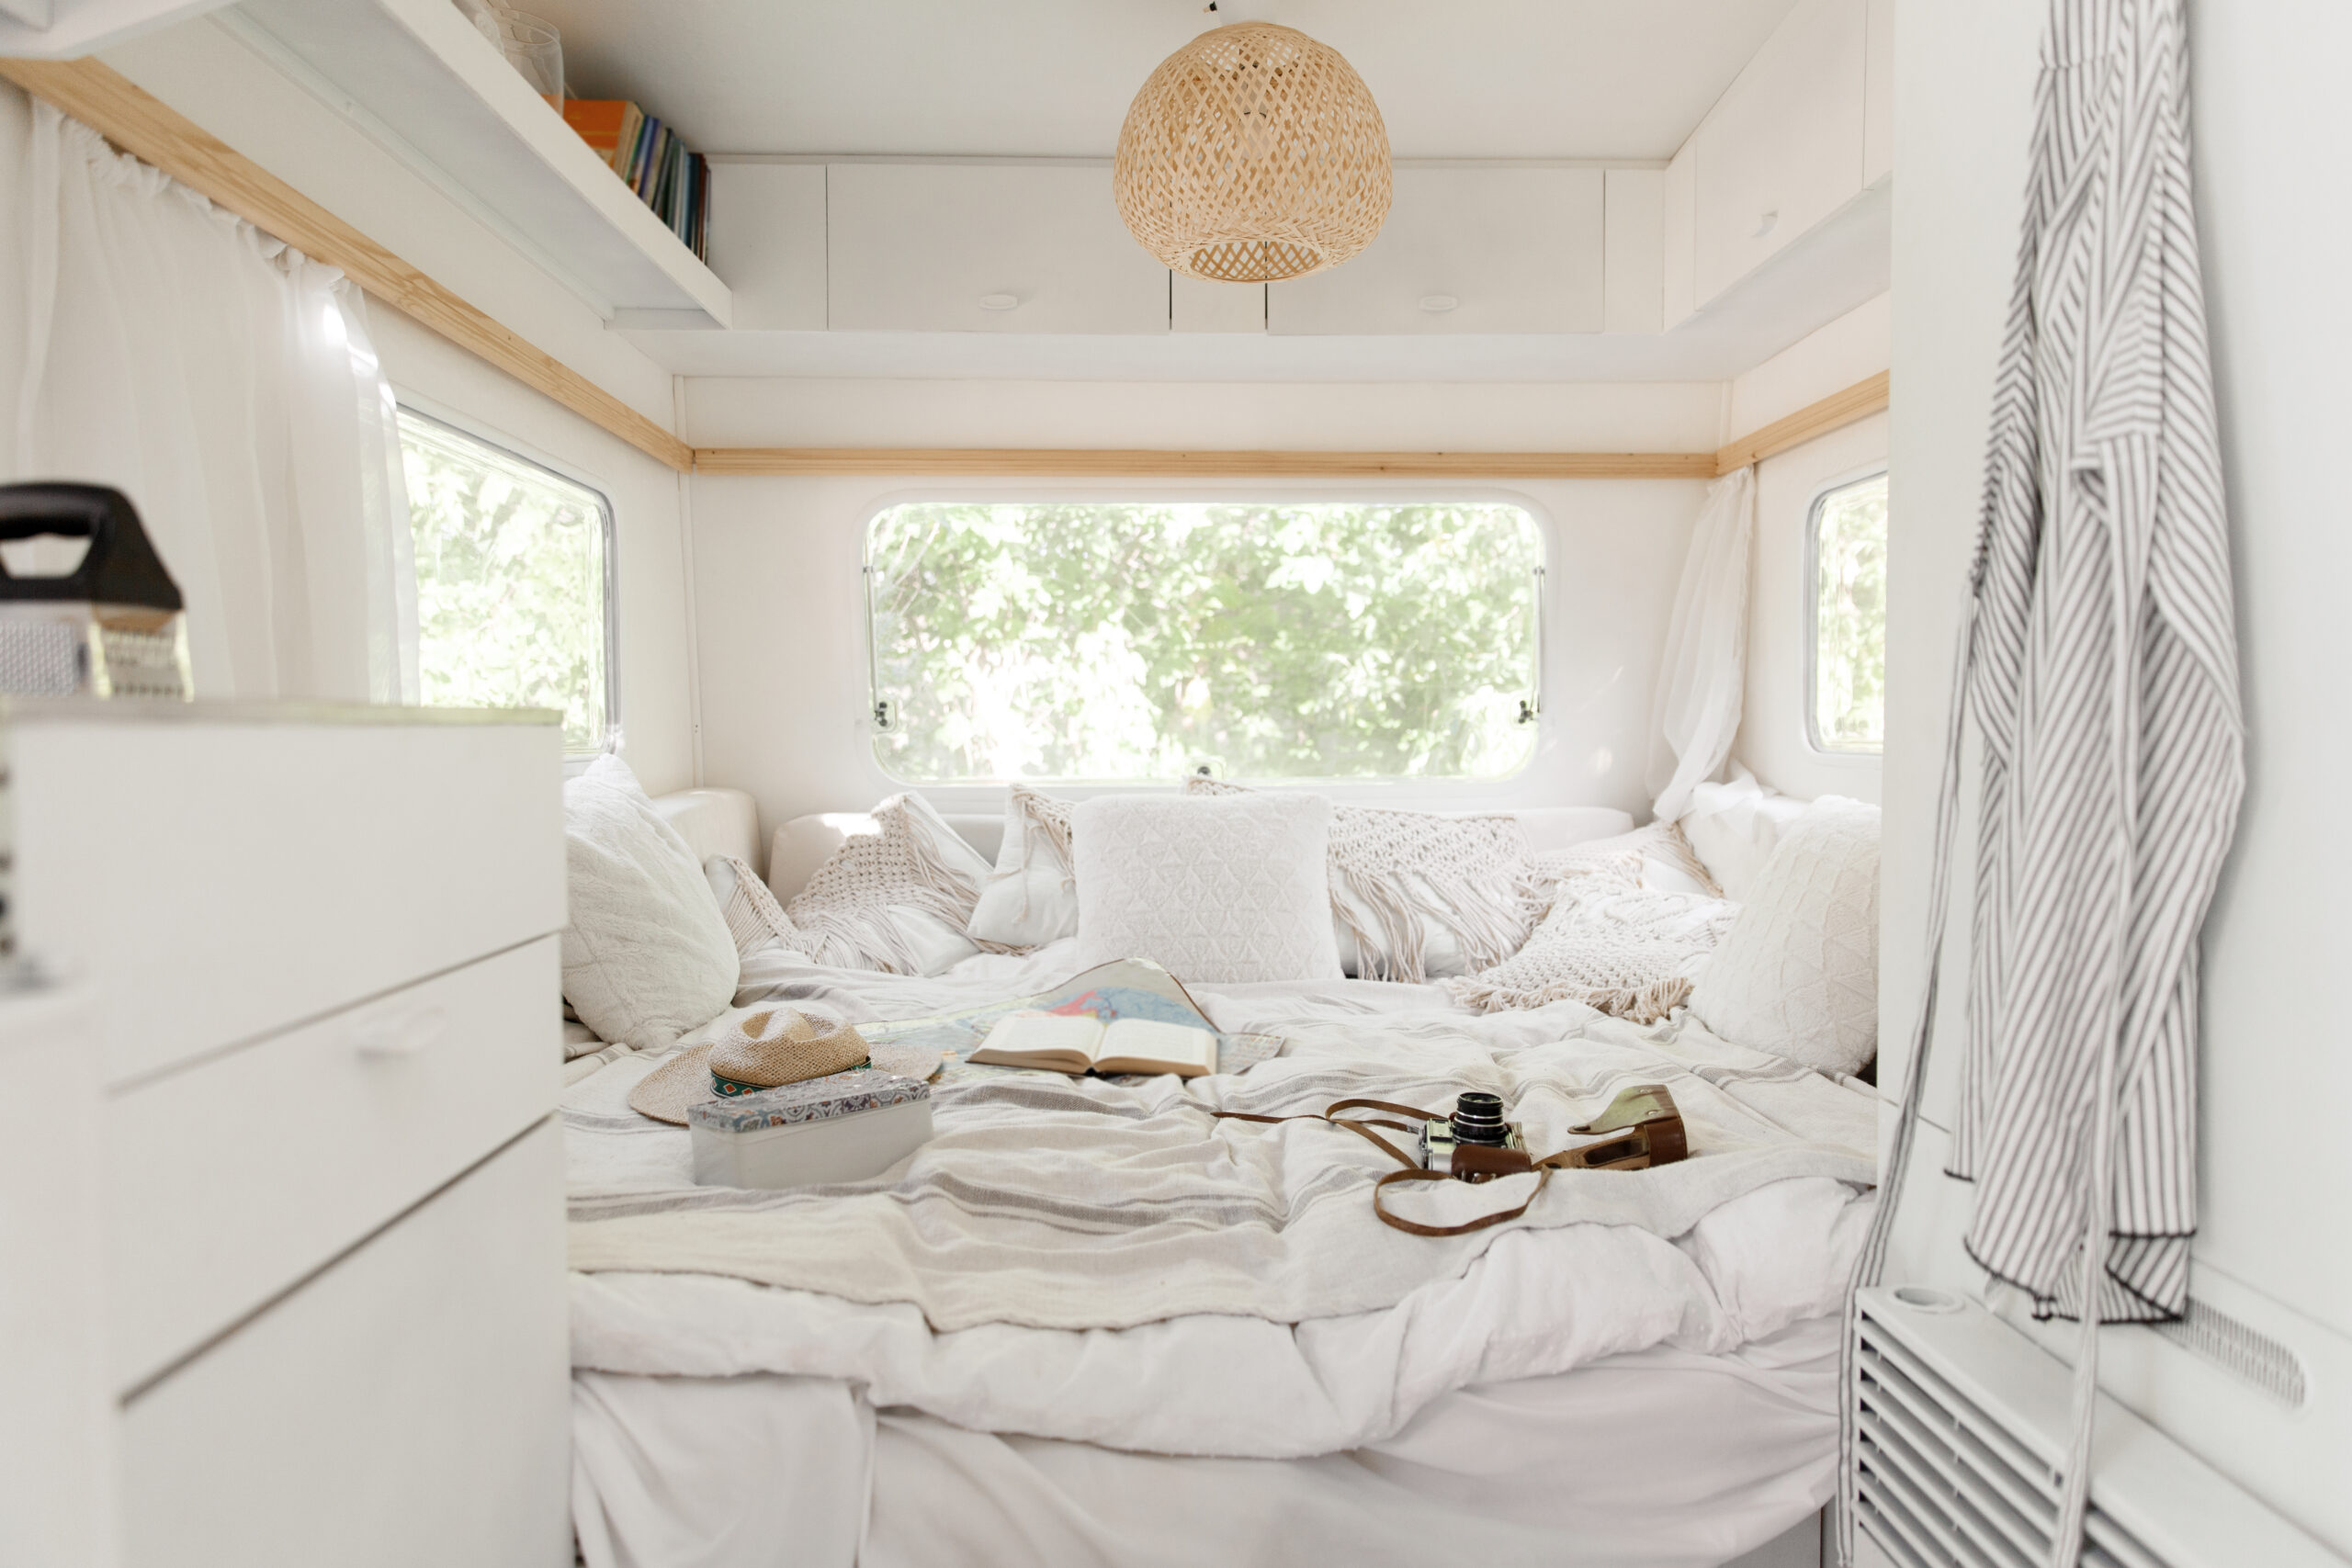 camper decor ideas - renovated interior